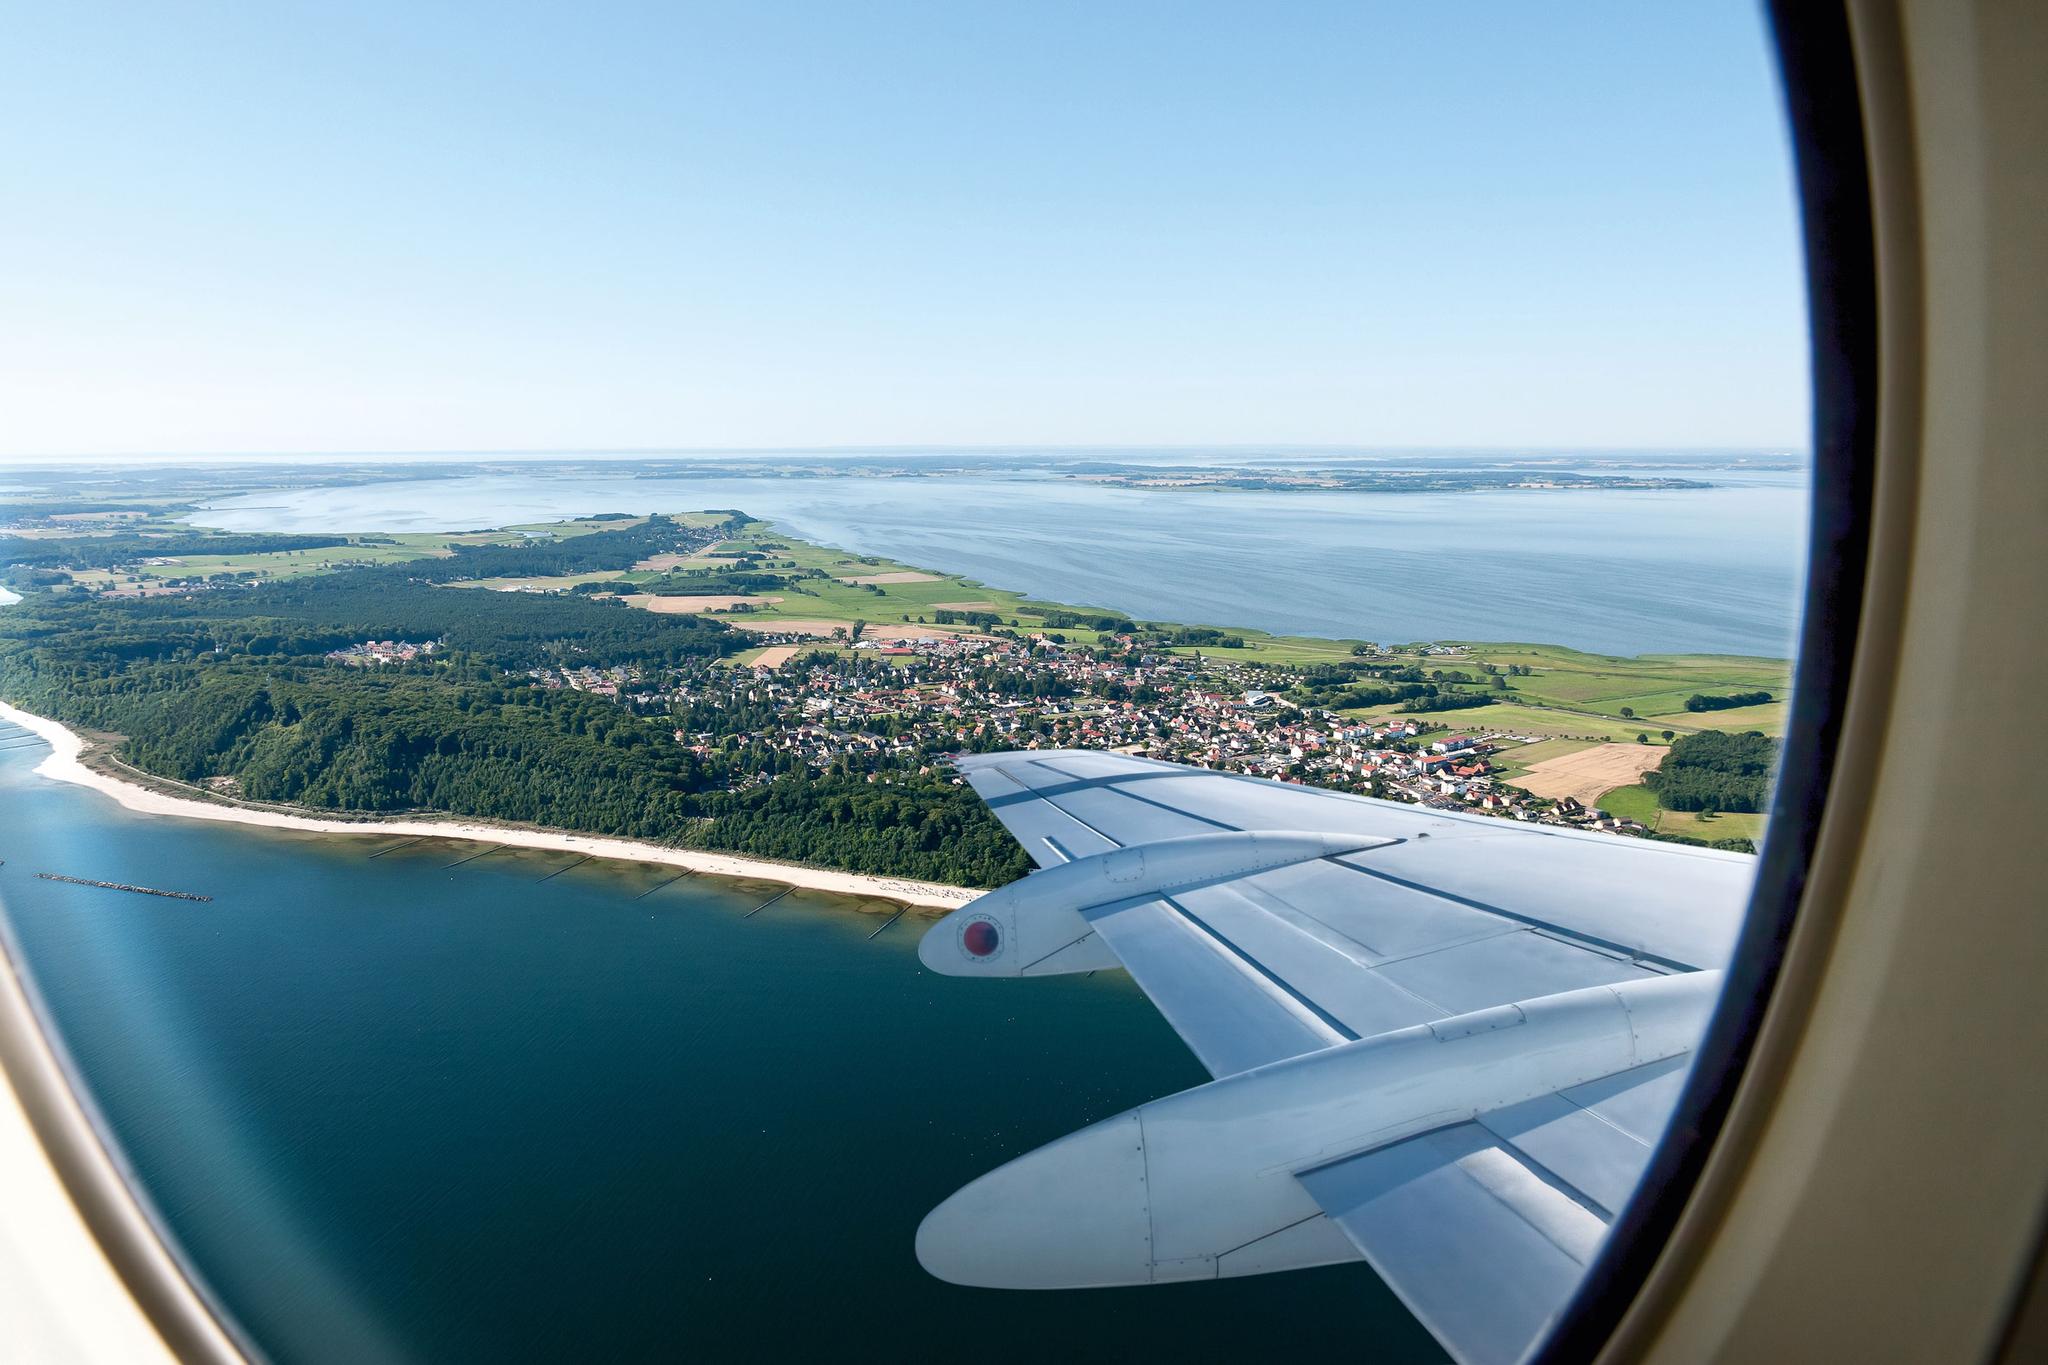 Blick aus dem Flugzeug auf die Insel Usedom